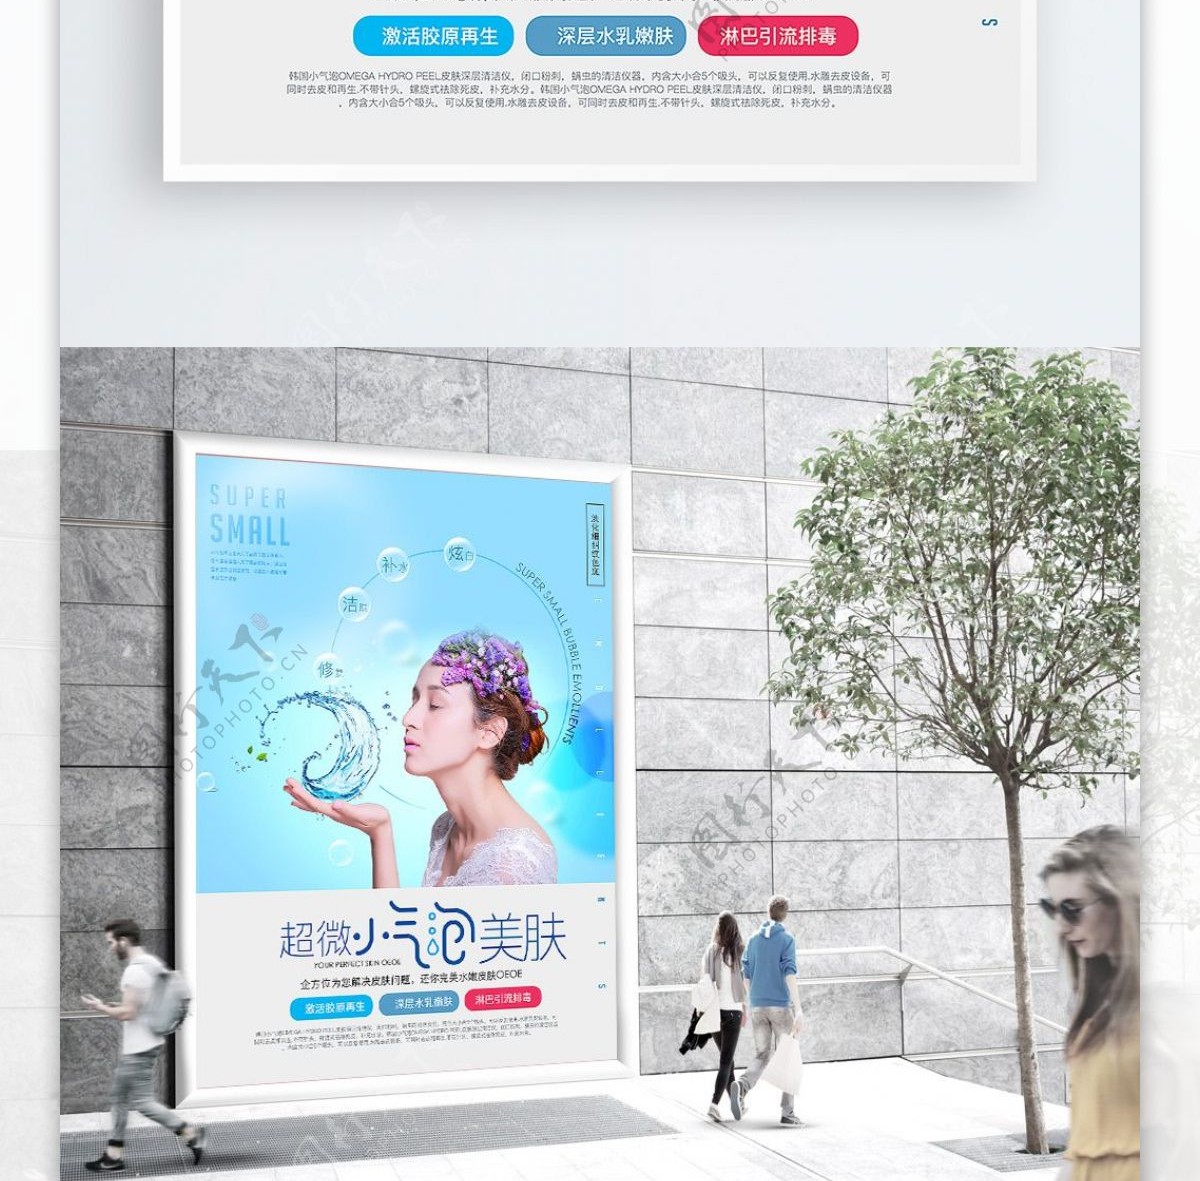 韩国超微小气泡美容海报